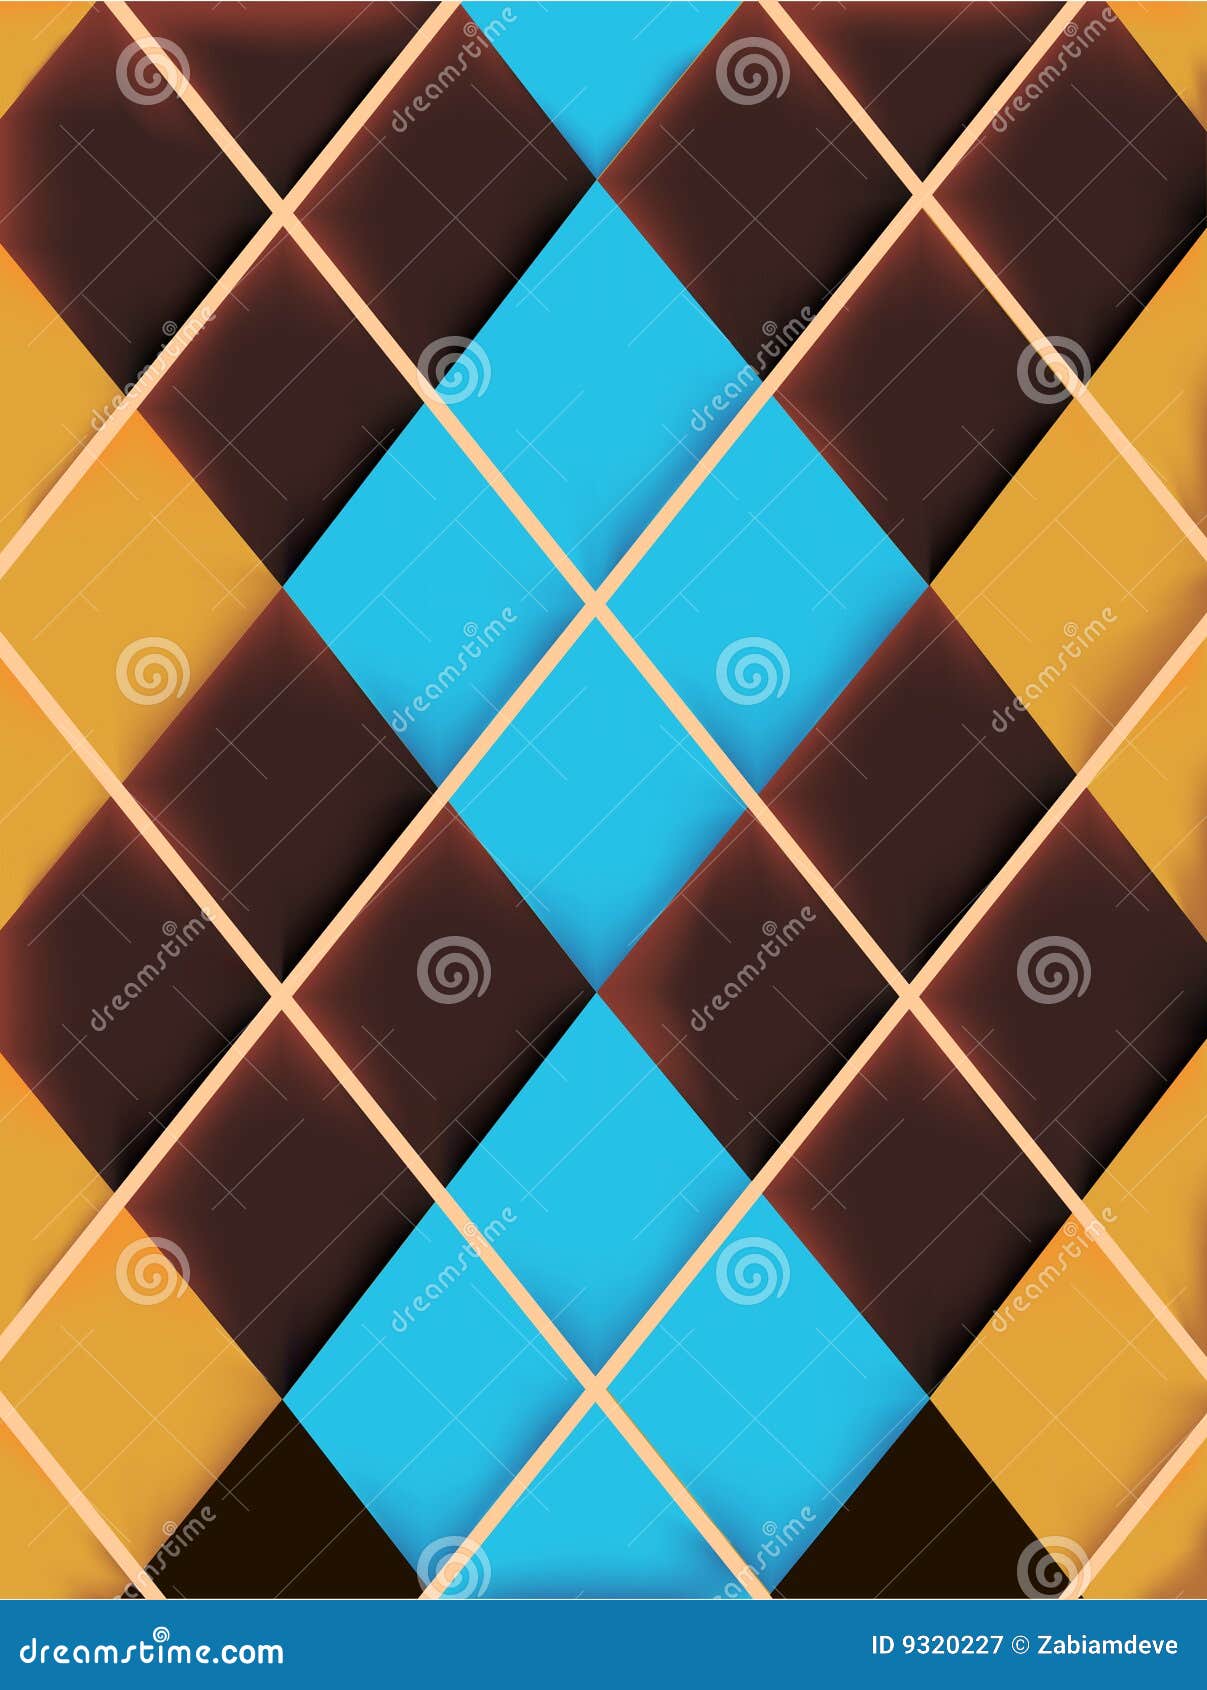 rhombus texture